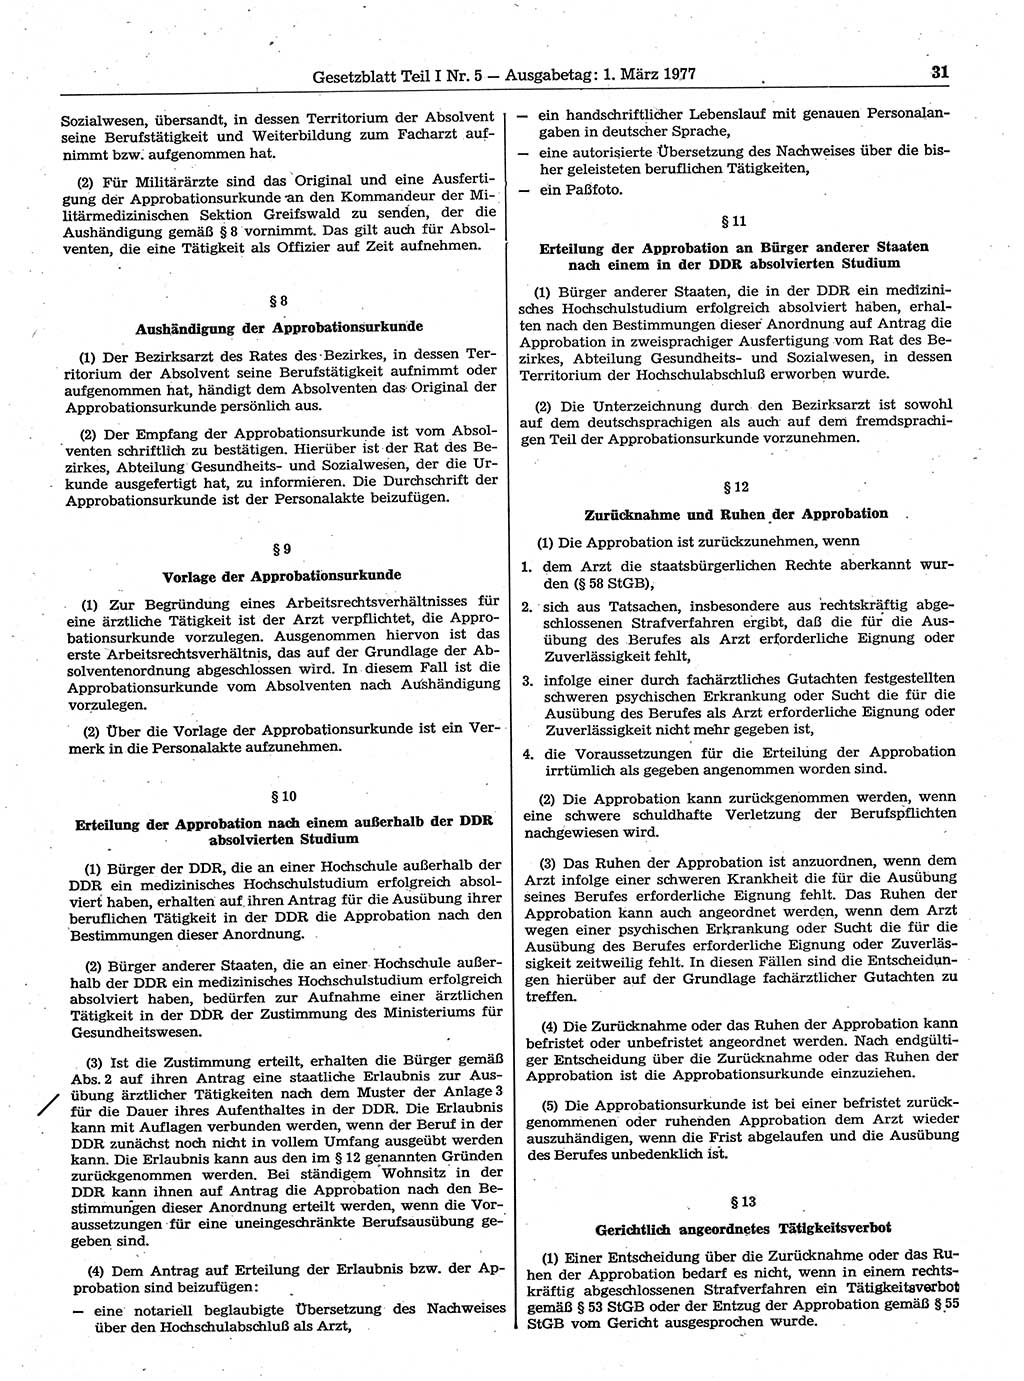 Gesetzblatt (GBl.) der Deutschen Demokratischen Republik (DDR) Teil Ⅰ 1977, Seite 31 (GBl. DDR Ⅰ 1977, S. 31)